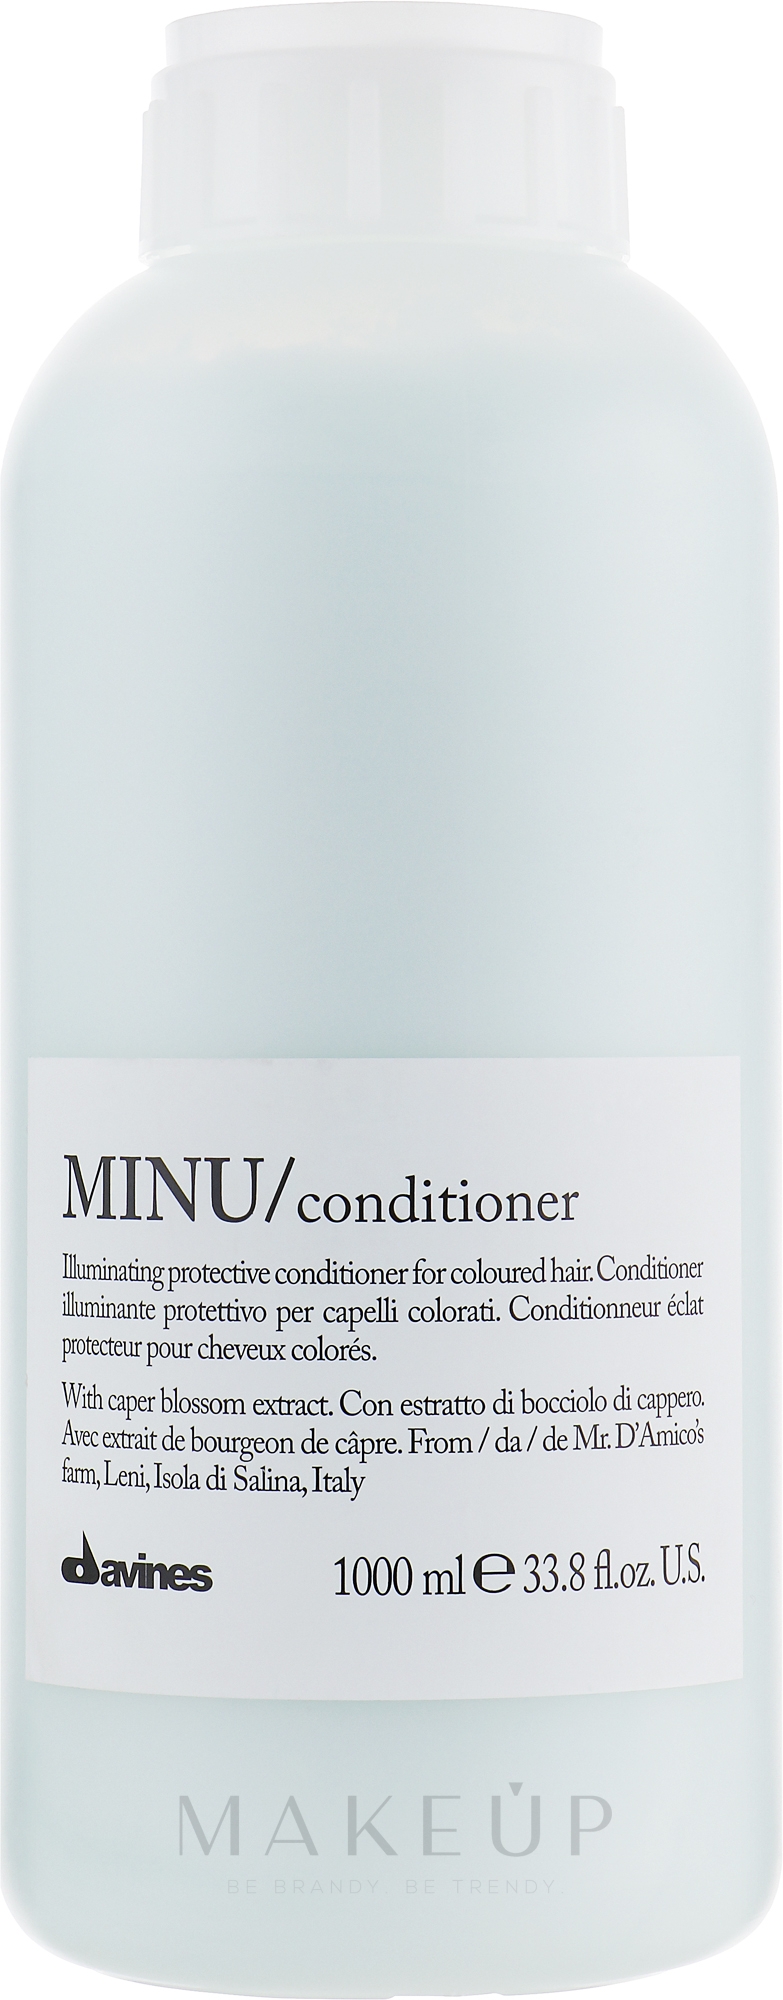 Conditioner für coloriertes Haar - Davines Minu Conditioner — Bild 1000 ml